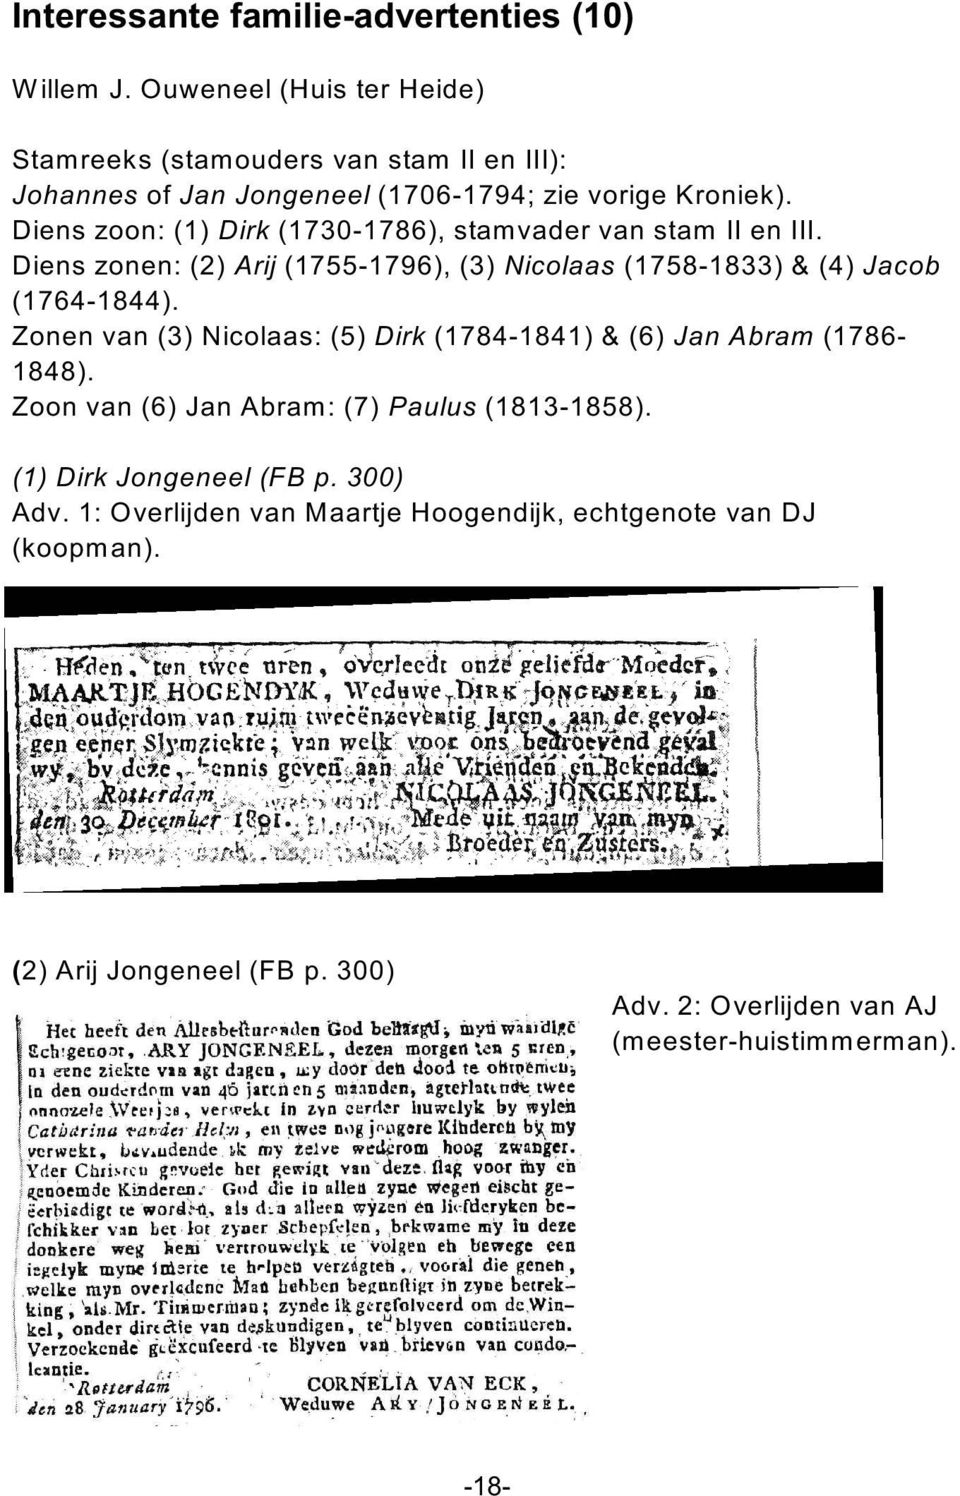 Diens zoon: (1) Dirk (1730-1786), stamvader van stam II en III. Diens zonen: (2) Arij (1755-1796), (3) Nicolaas (1758-1833) & (4) Jacob (1764-1844).